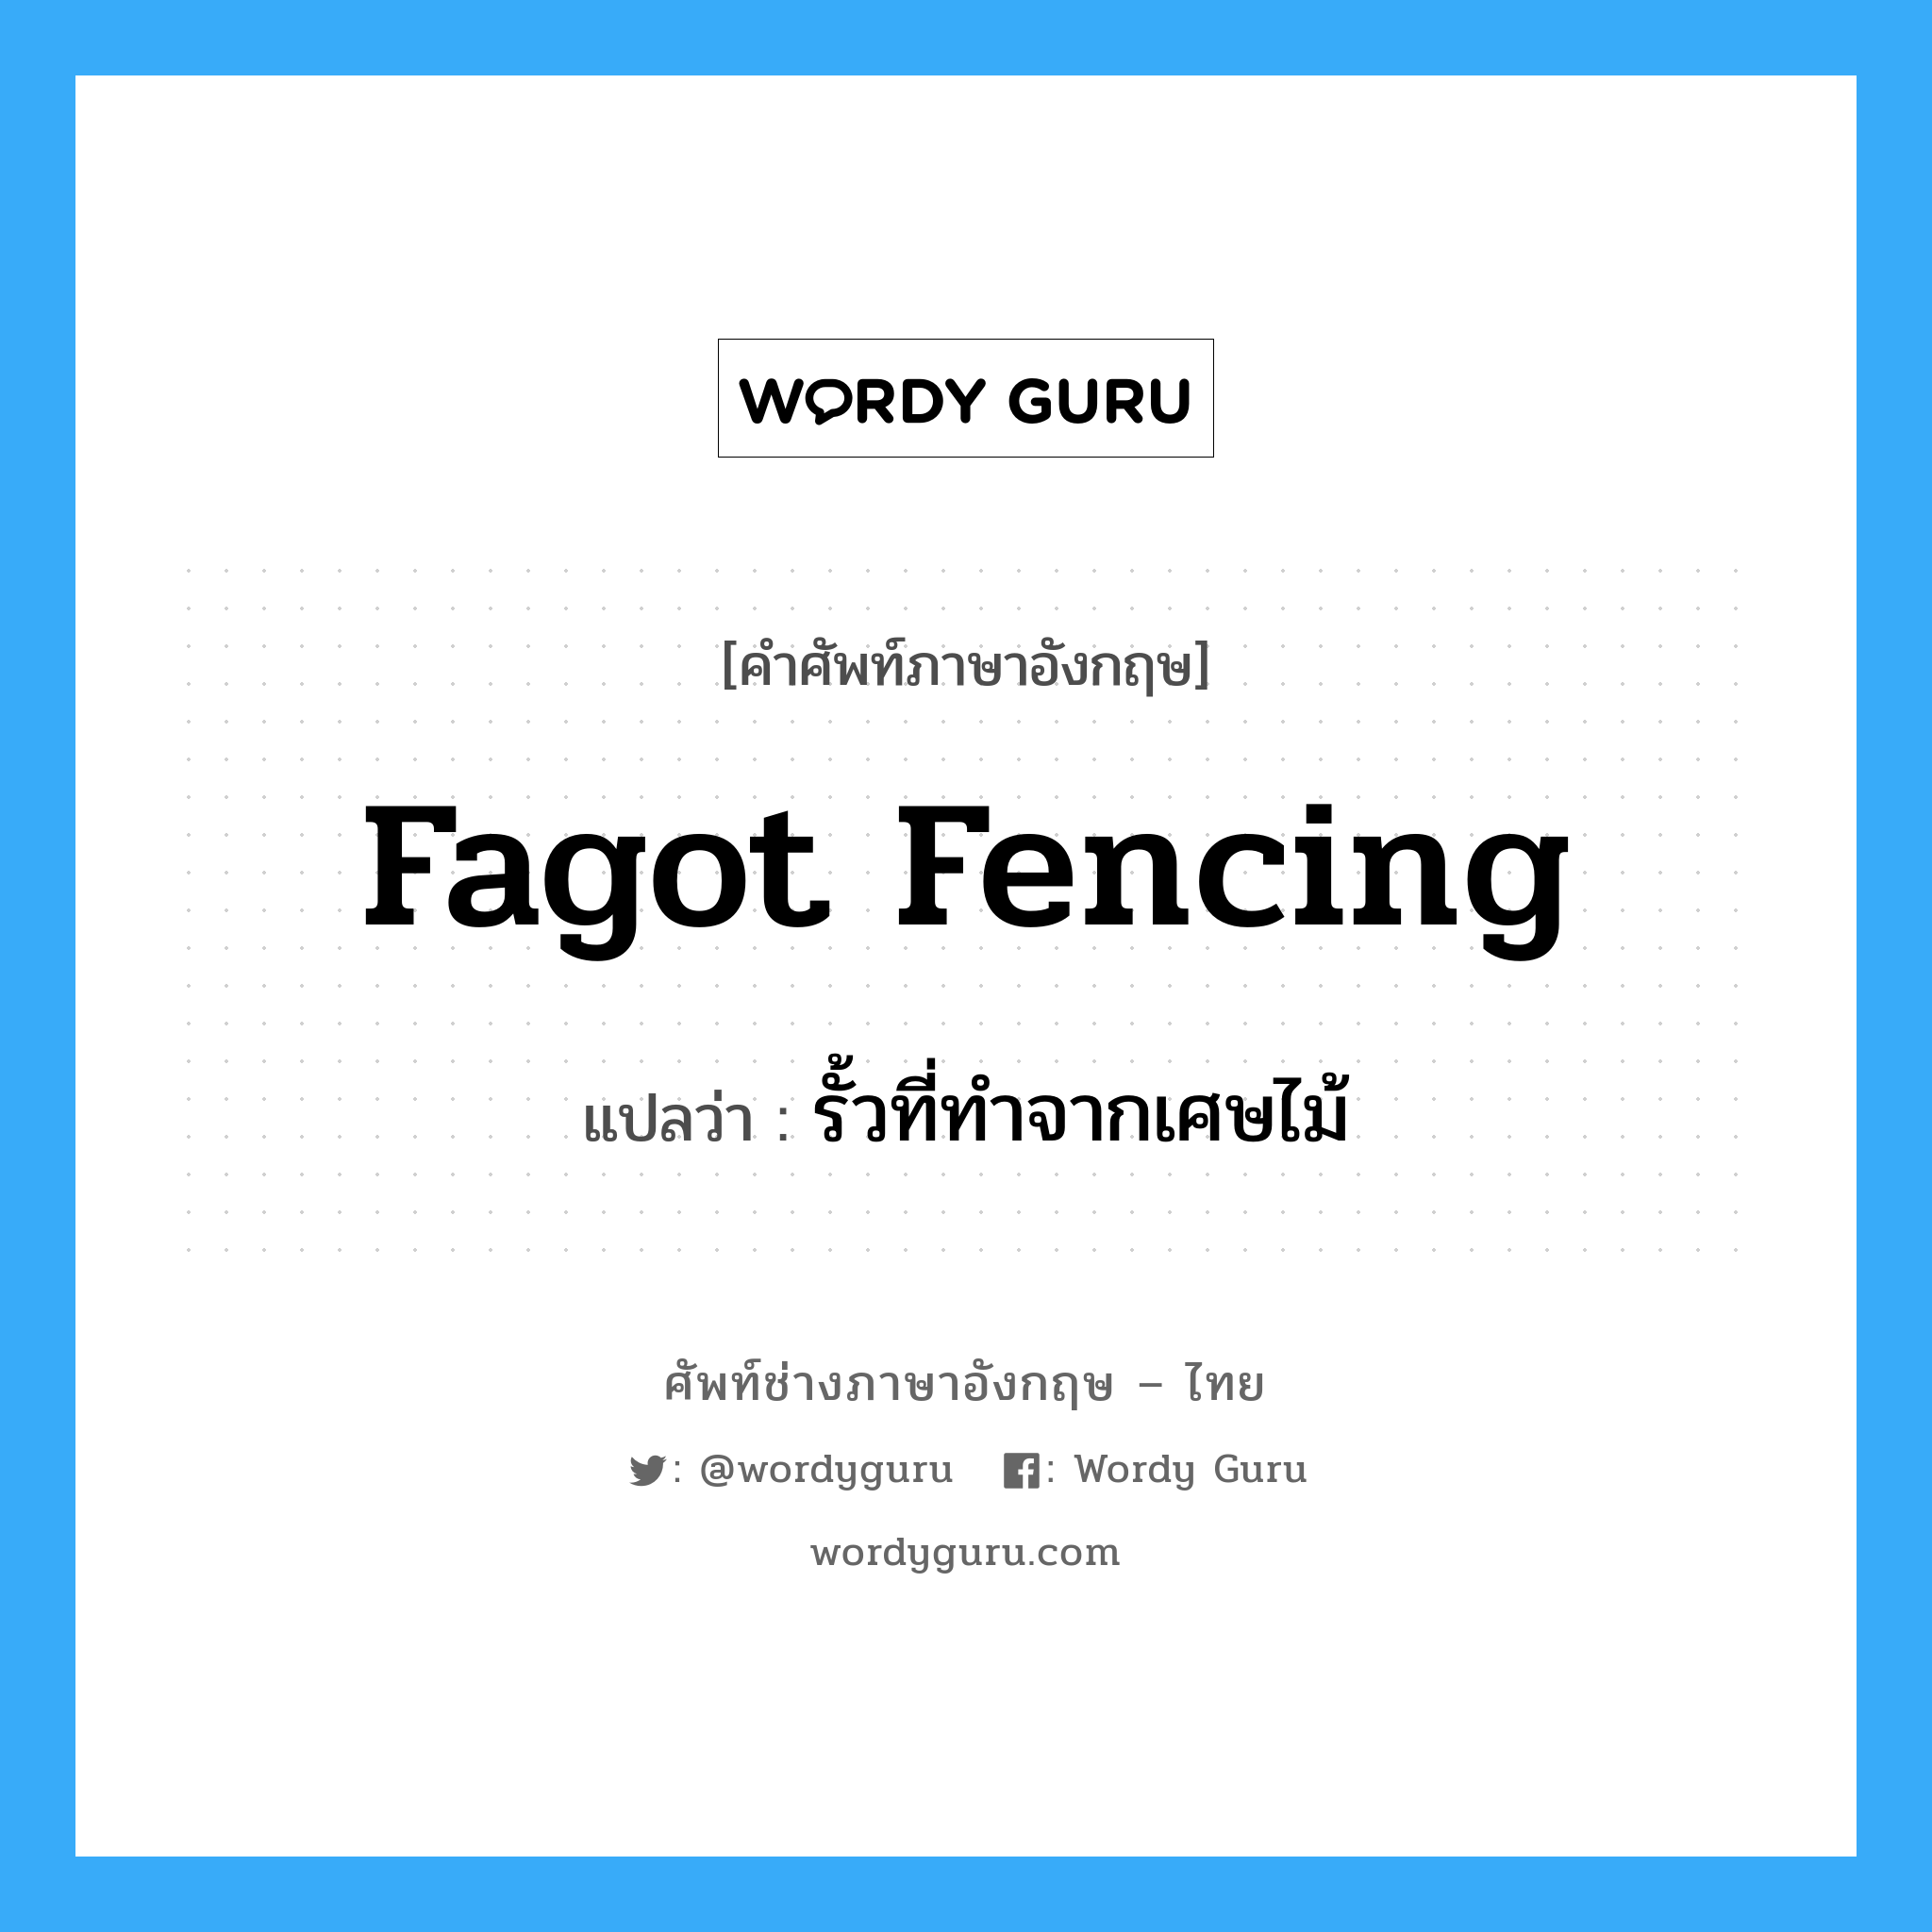 รั้วที่ทำจากเศษไม้ ภาษาอังกฤษ?, คำศัพท์ช่างภาษาอังกฤษ - ไทย รั้วที่ทำจากเศษไม้ คำศัพท์ภาษาอังกฤษ รั้วที่ทำจากเศษไม้ แปลว่า fagot fencing